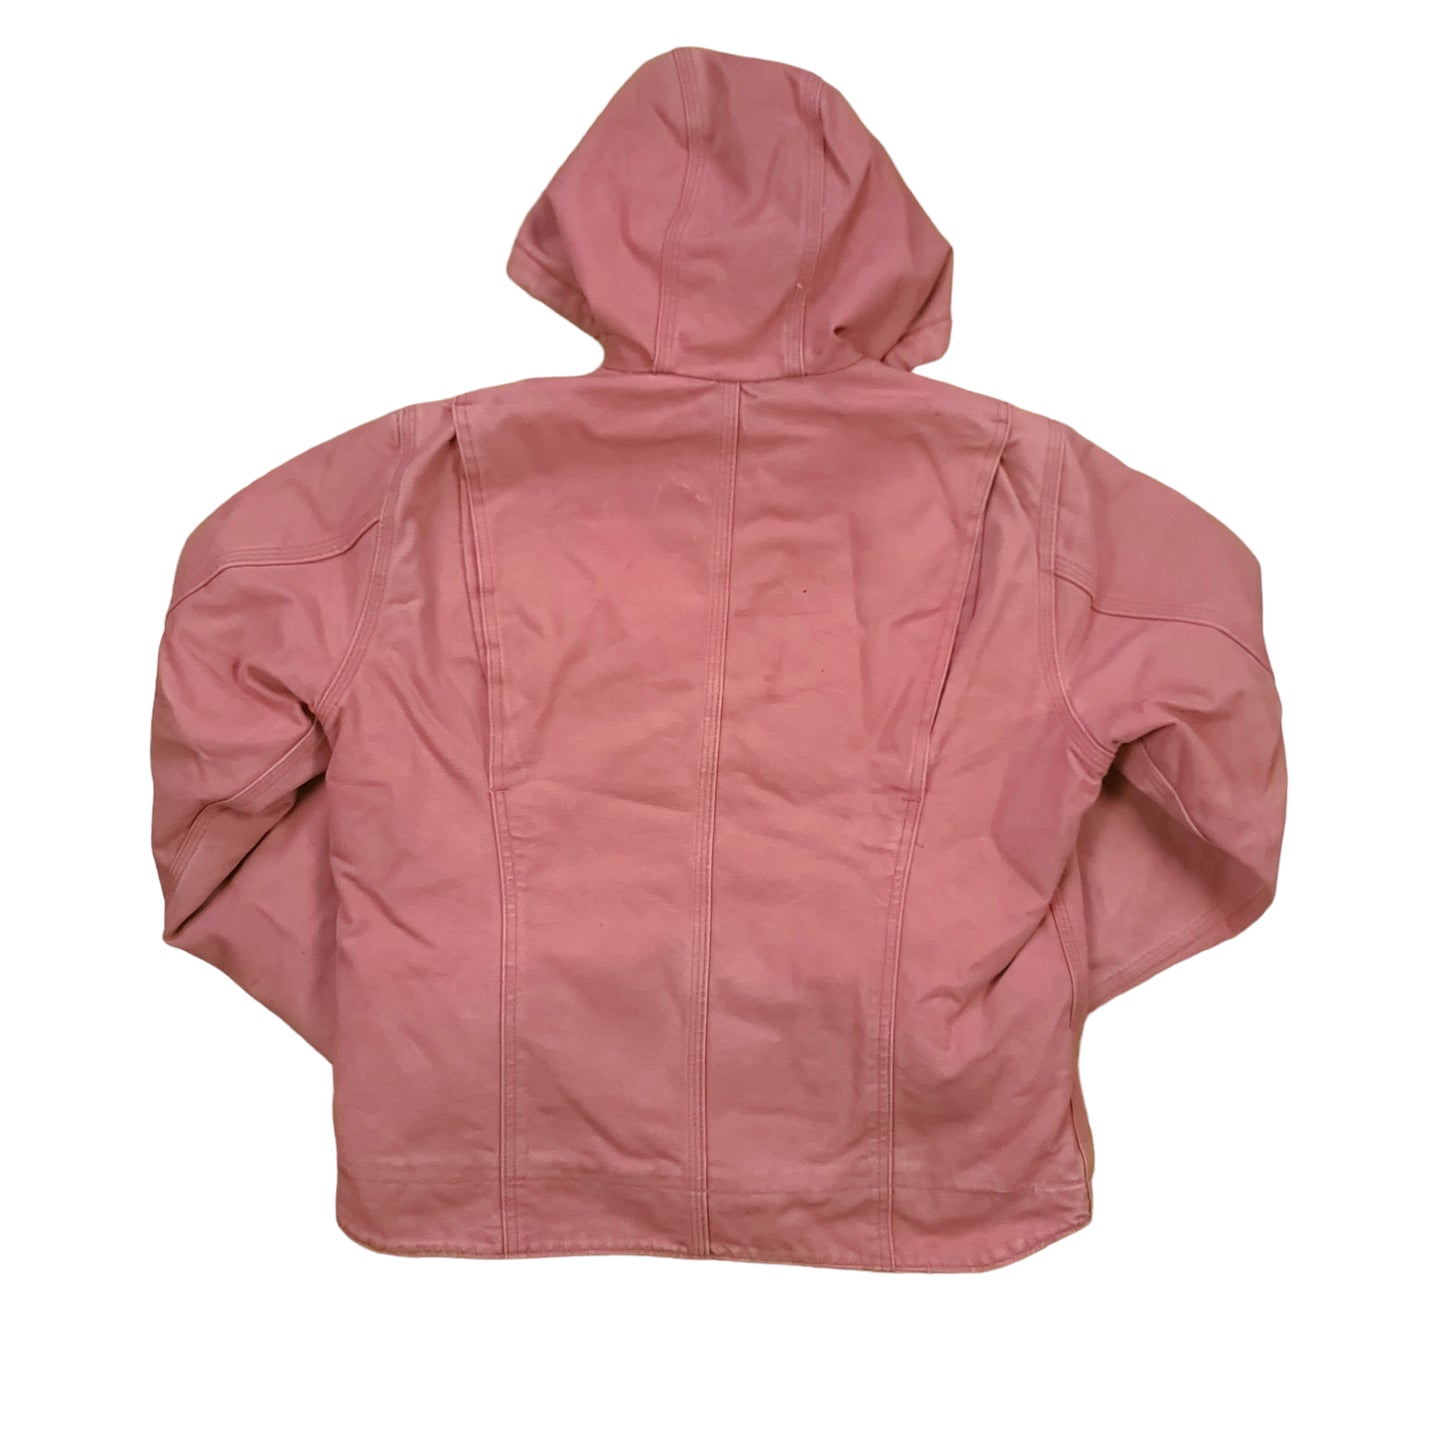 Carhartt Women's Pink Sierra Sandstone Workwear Jacket